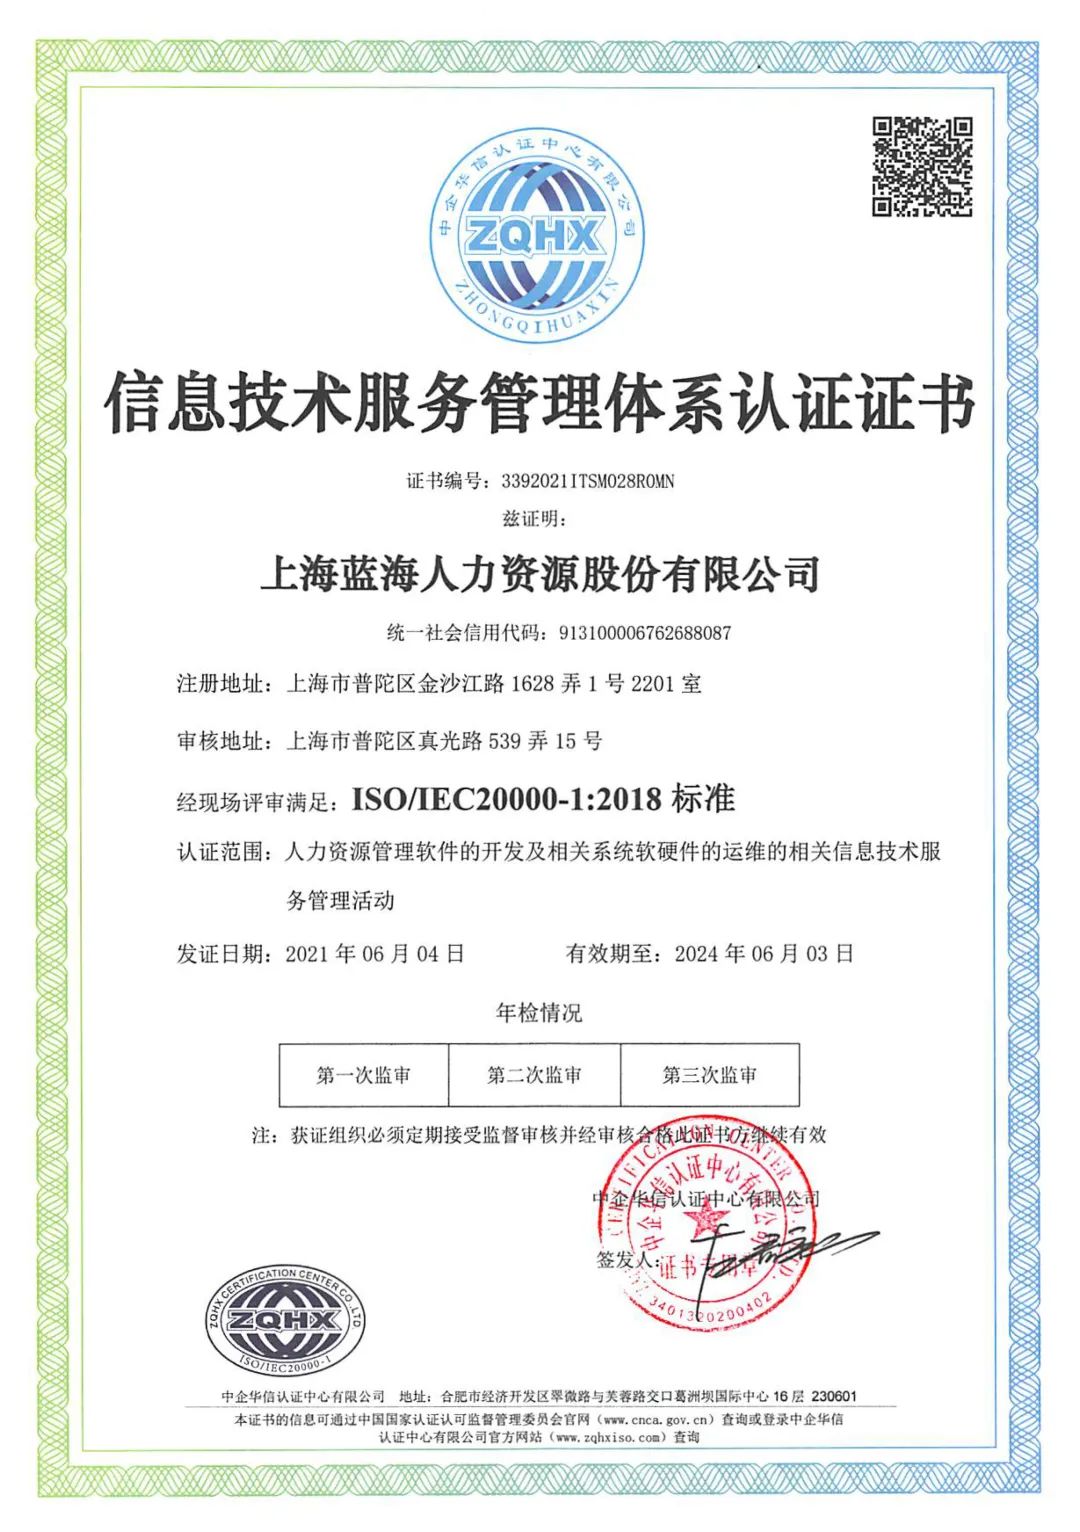 蓝海股份通过ISO20000认证 信息技术服务管理标准获国际认可